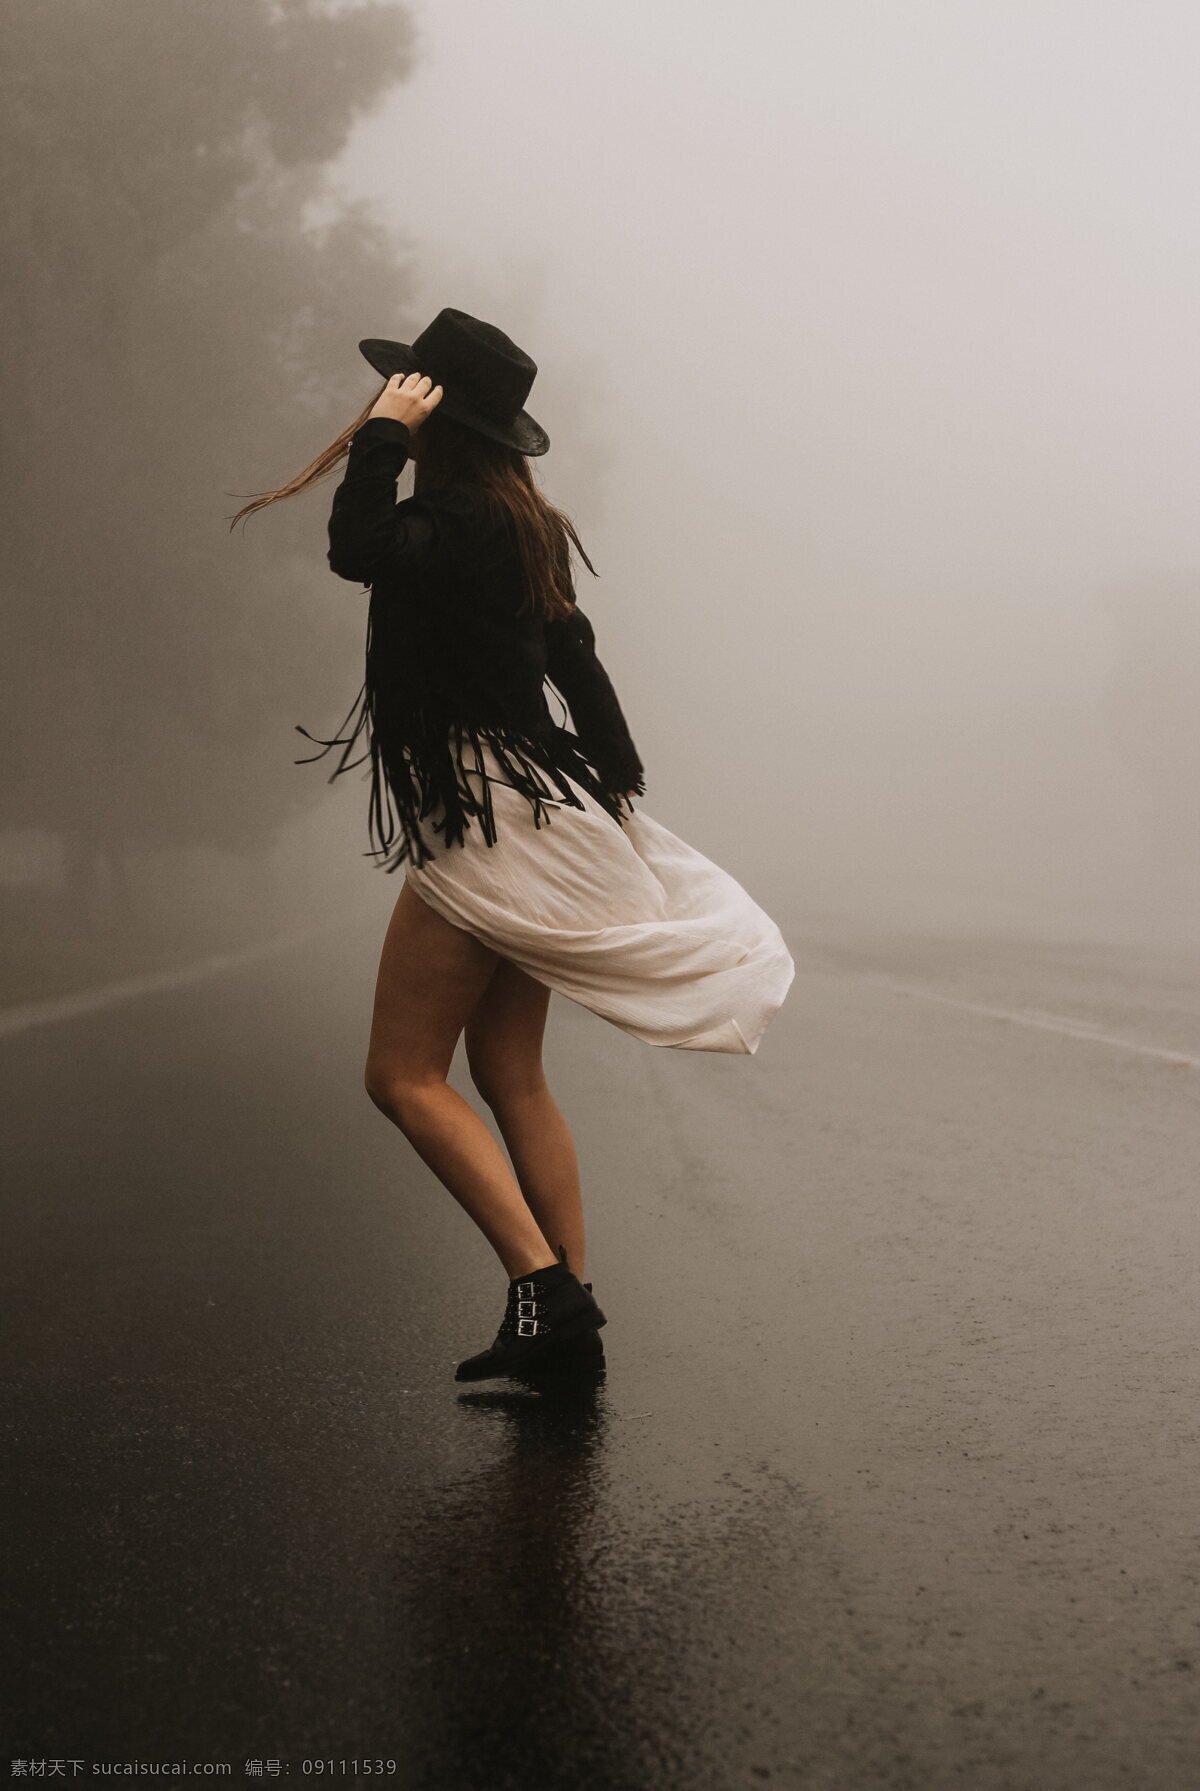 舞者 舞动的美女 舞动 美女 女人 舞女 跳舞 裙装 马路 大雾 大雾天 路上 树木 艺术 表演 舞蹈 青春美女 音乐 剧场 文化艺术 舞蹈音乐